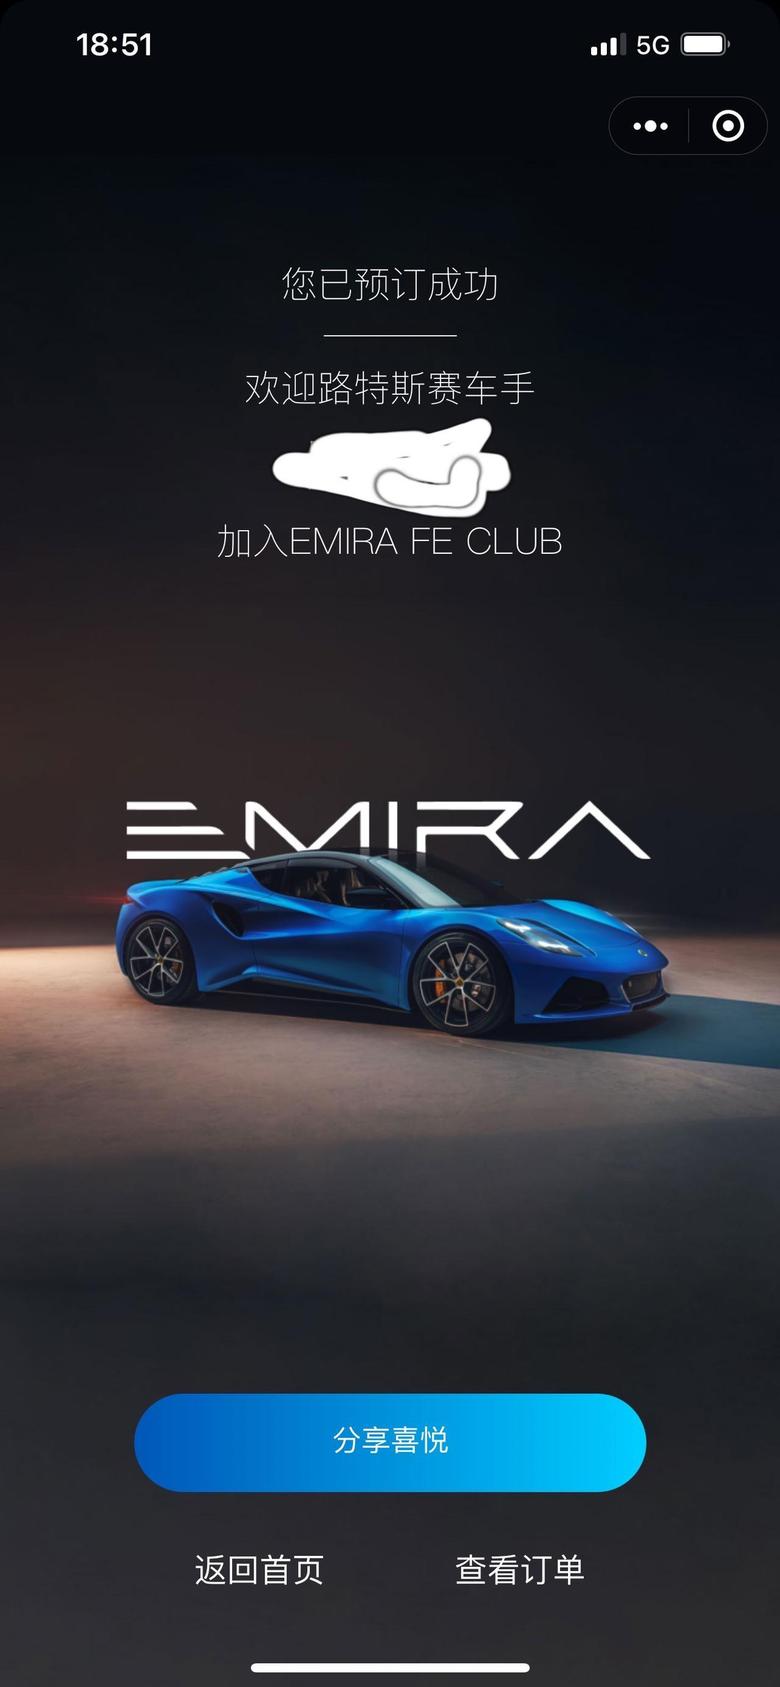 emira 真的很想拿到首发版，但希望落地别超70，毕竟是2.0的机头，超70买它真是靠情怀了